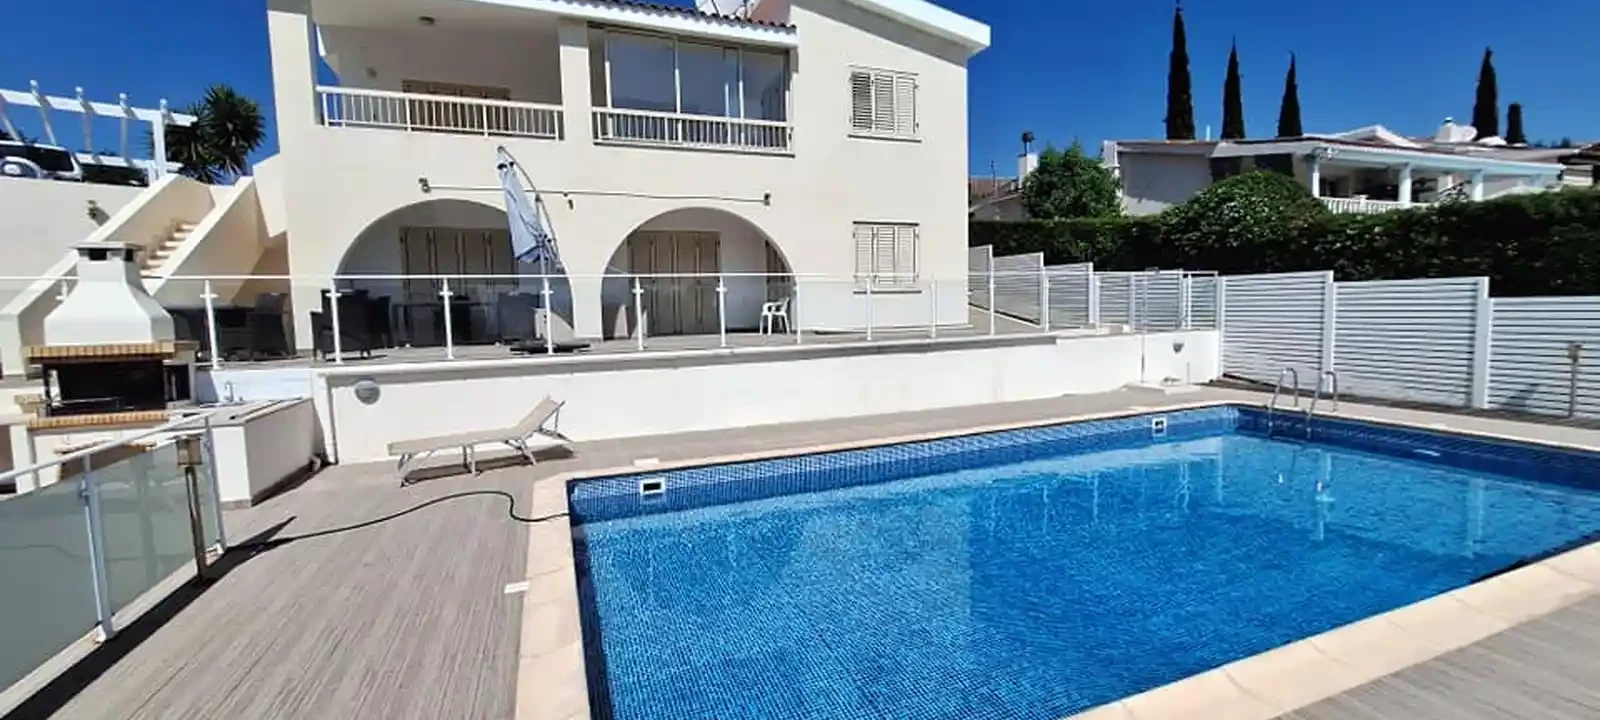 5-bedroom villa to rent €2.300, image 1